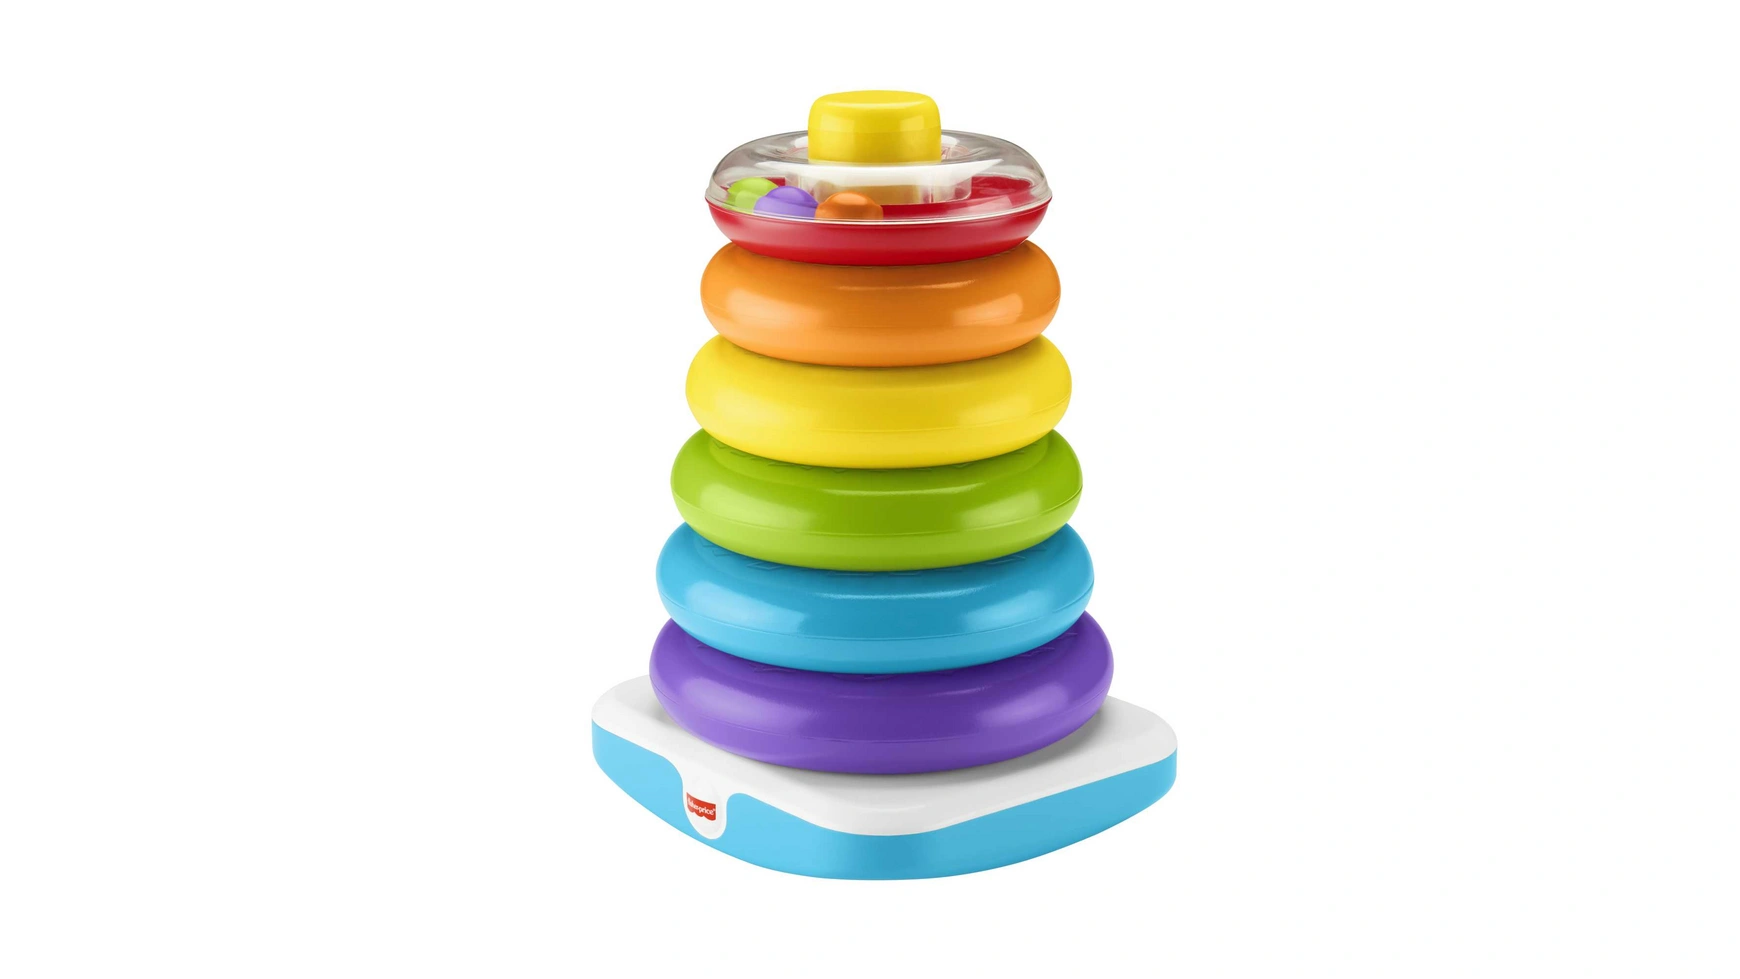 Гигантская цветная кольцевая пирамида Fisher Price, подключаемая игрушка, штабелируемая башня цена и фото